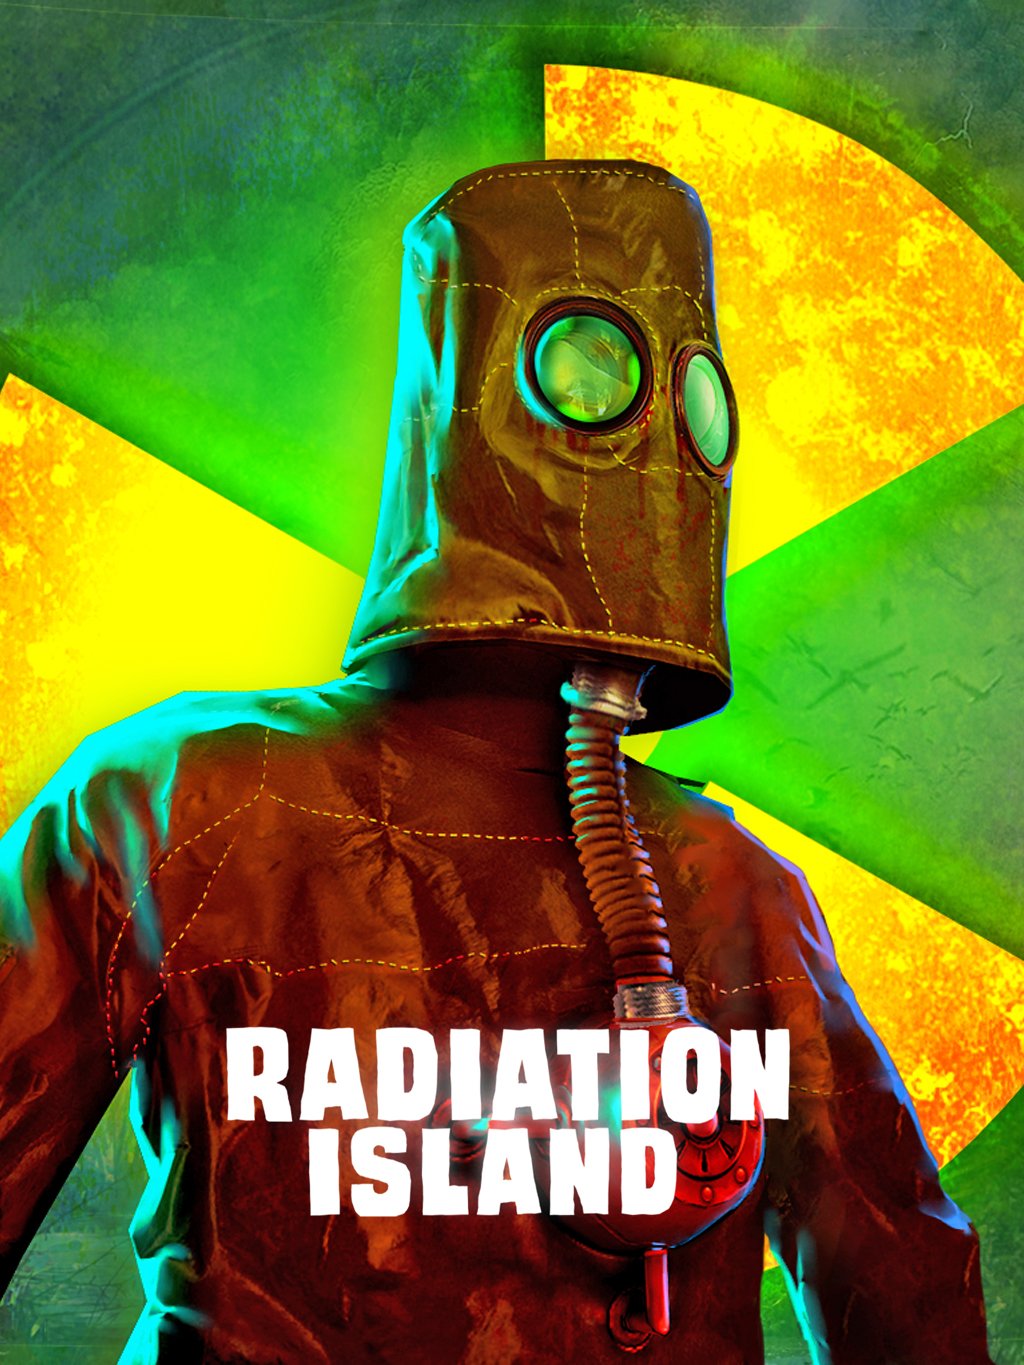 Image of Radiation Island